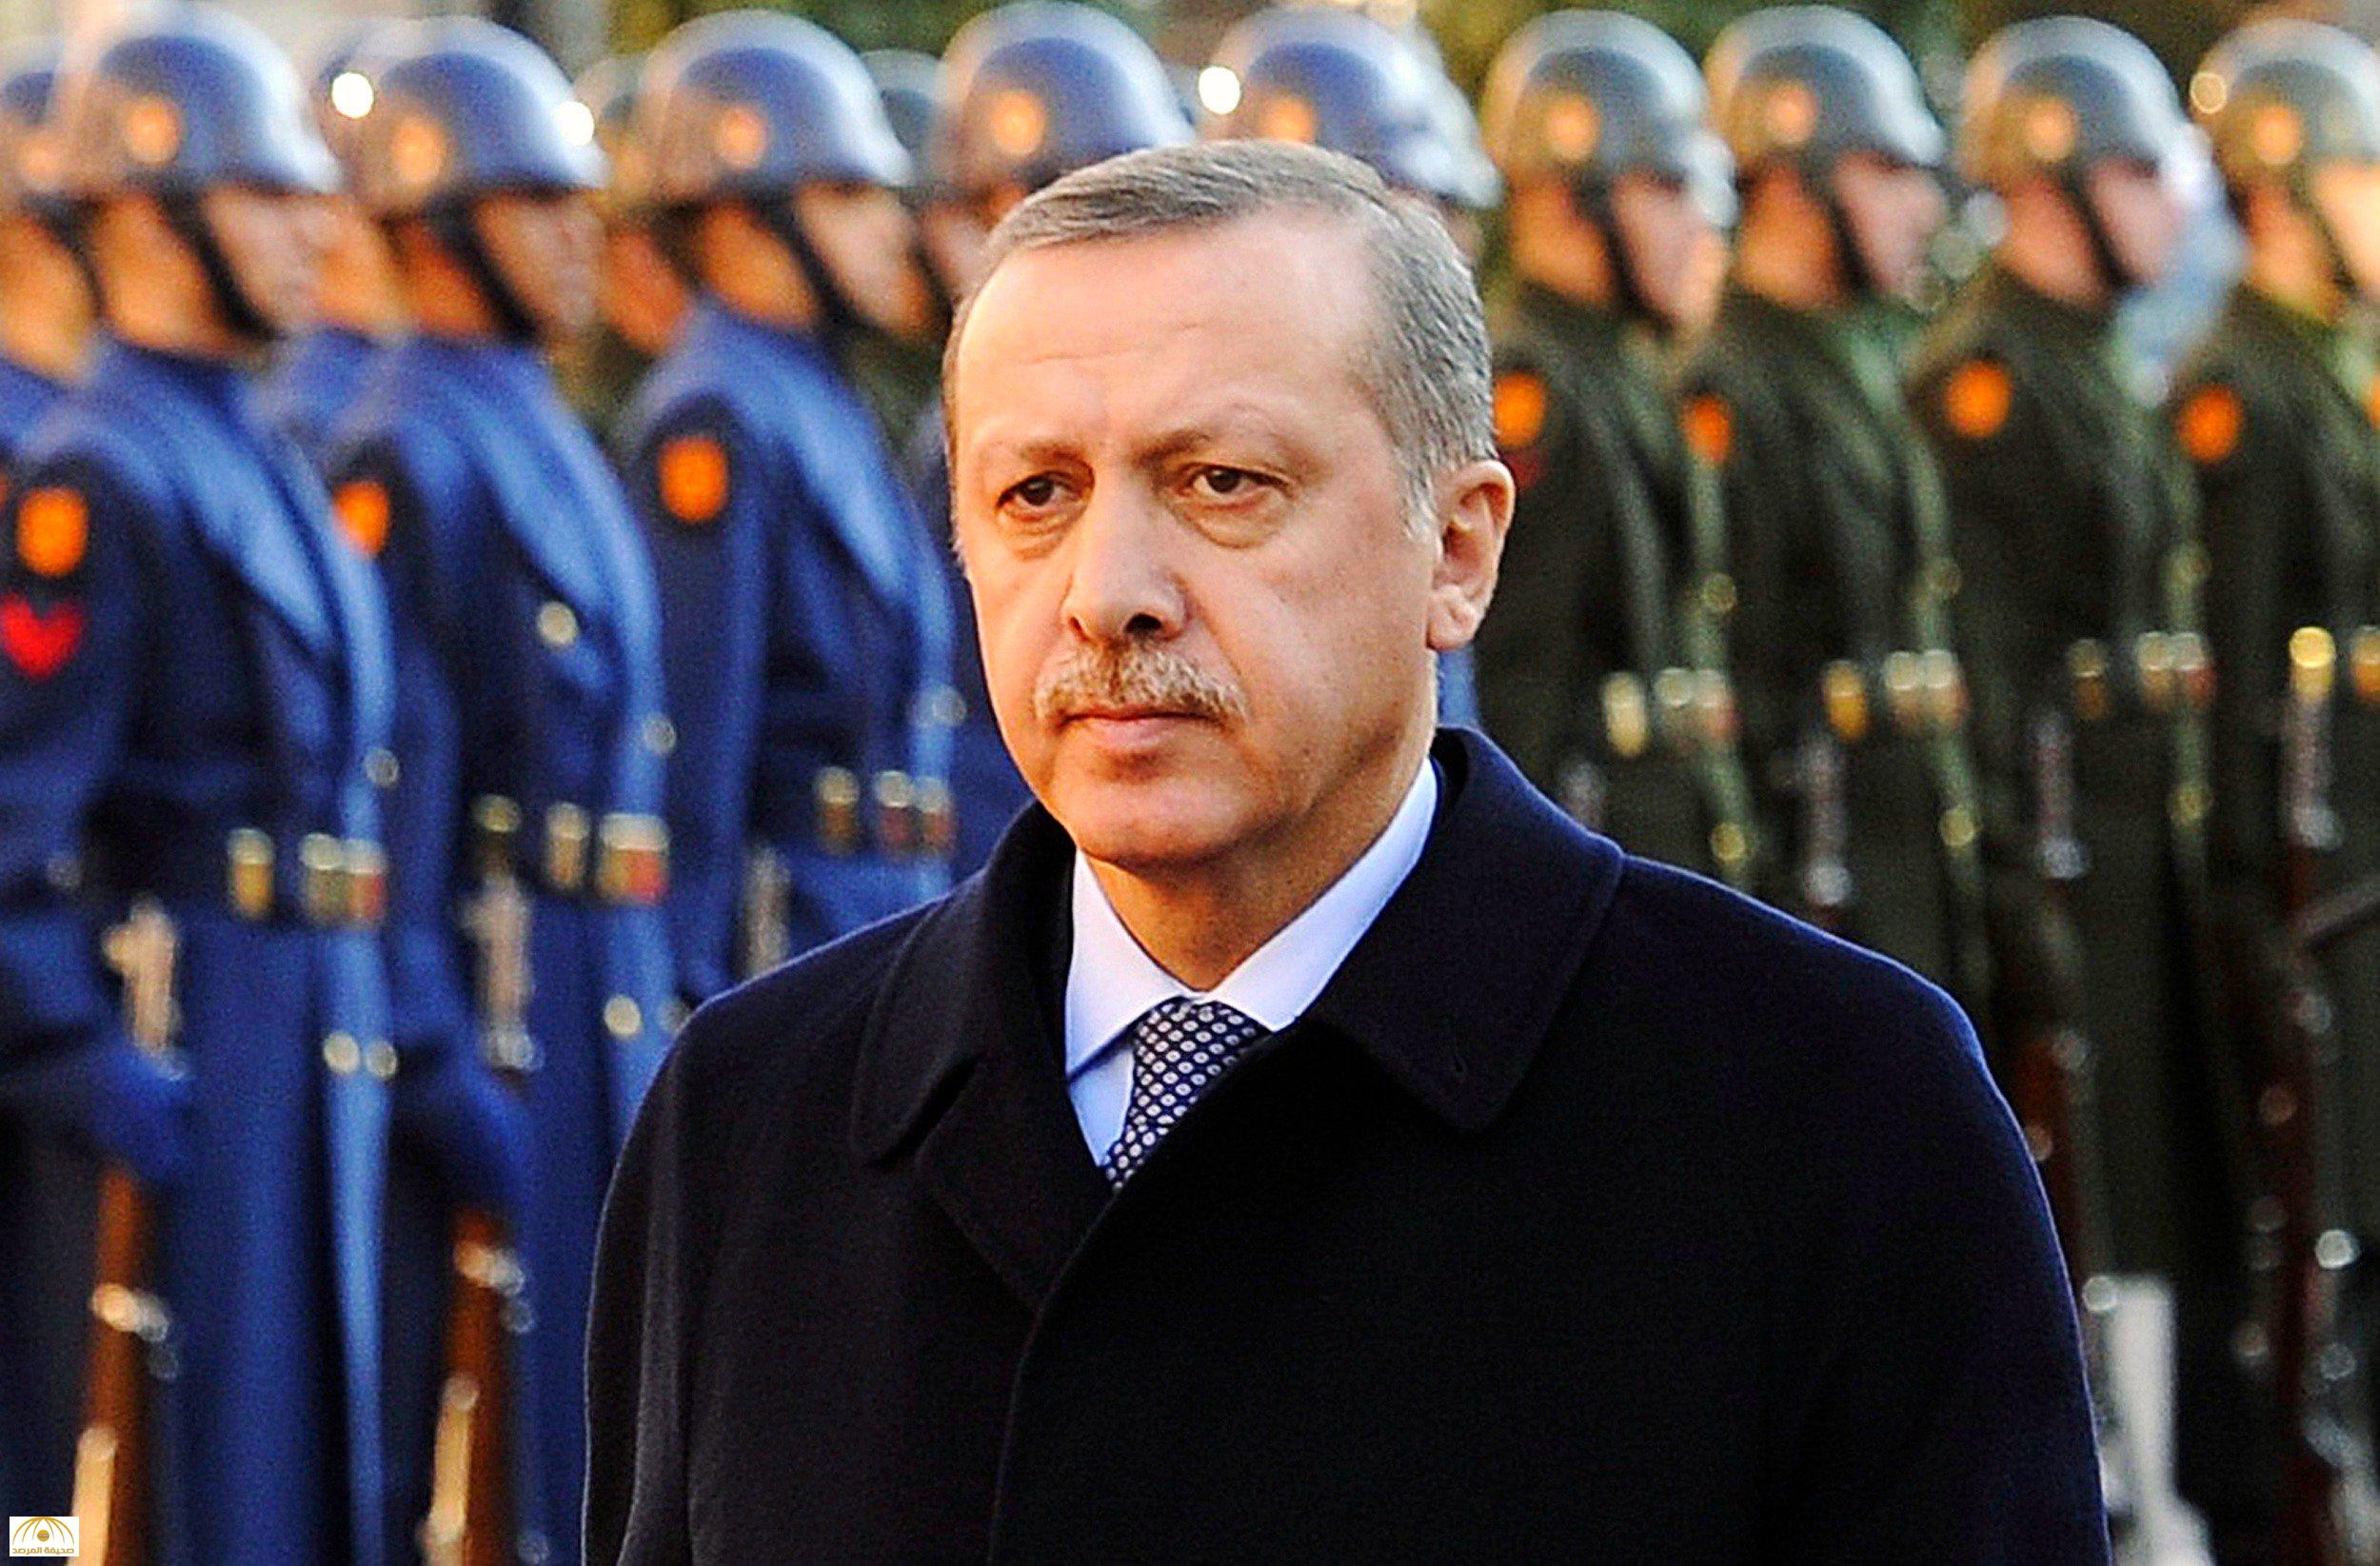 تركيا تكشف تفاصيل جديدة حول محاولة اغتيال أردوغان ليلة الانقلاب الفاشل